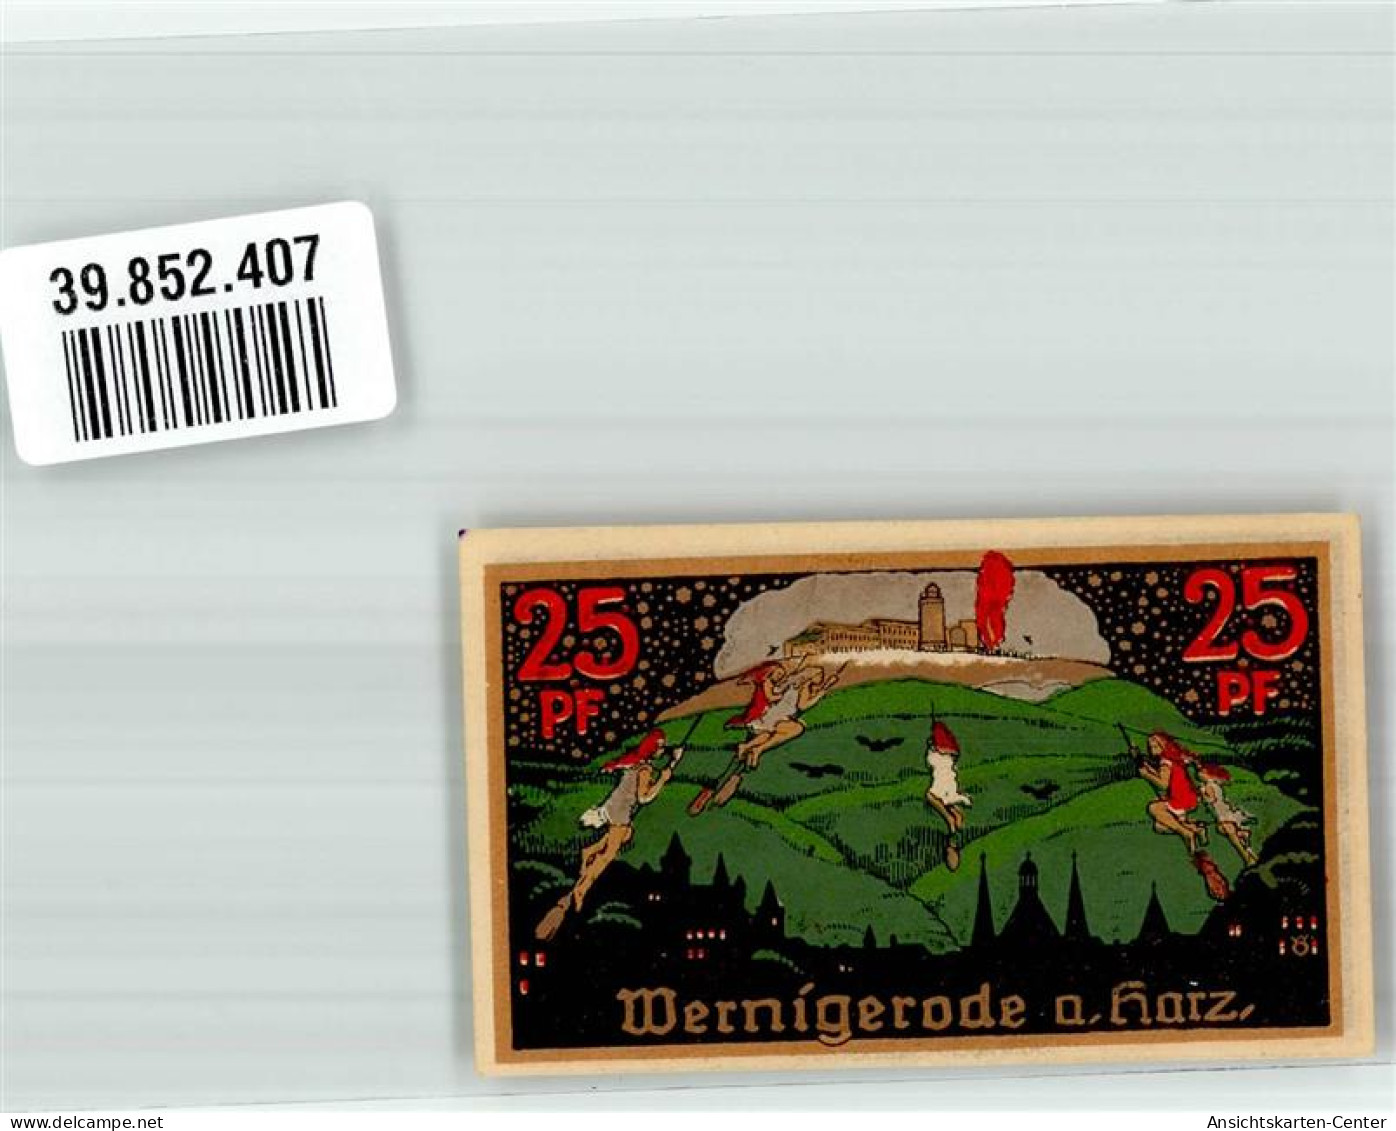 39852407 - Wernigerode - Wernigerode